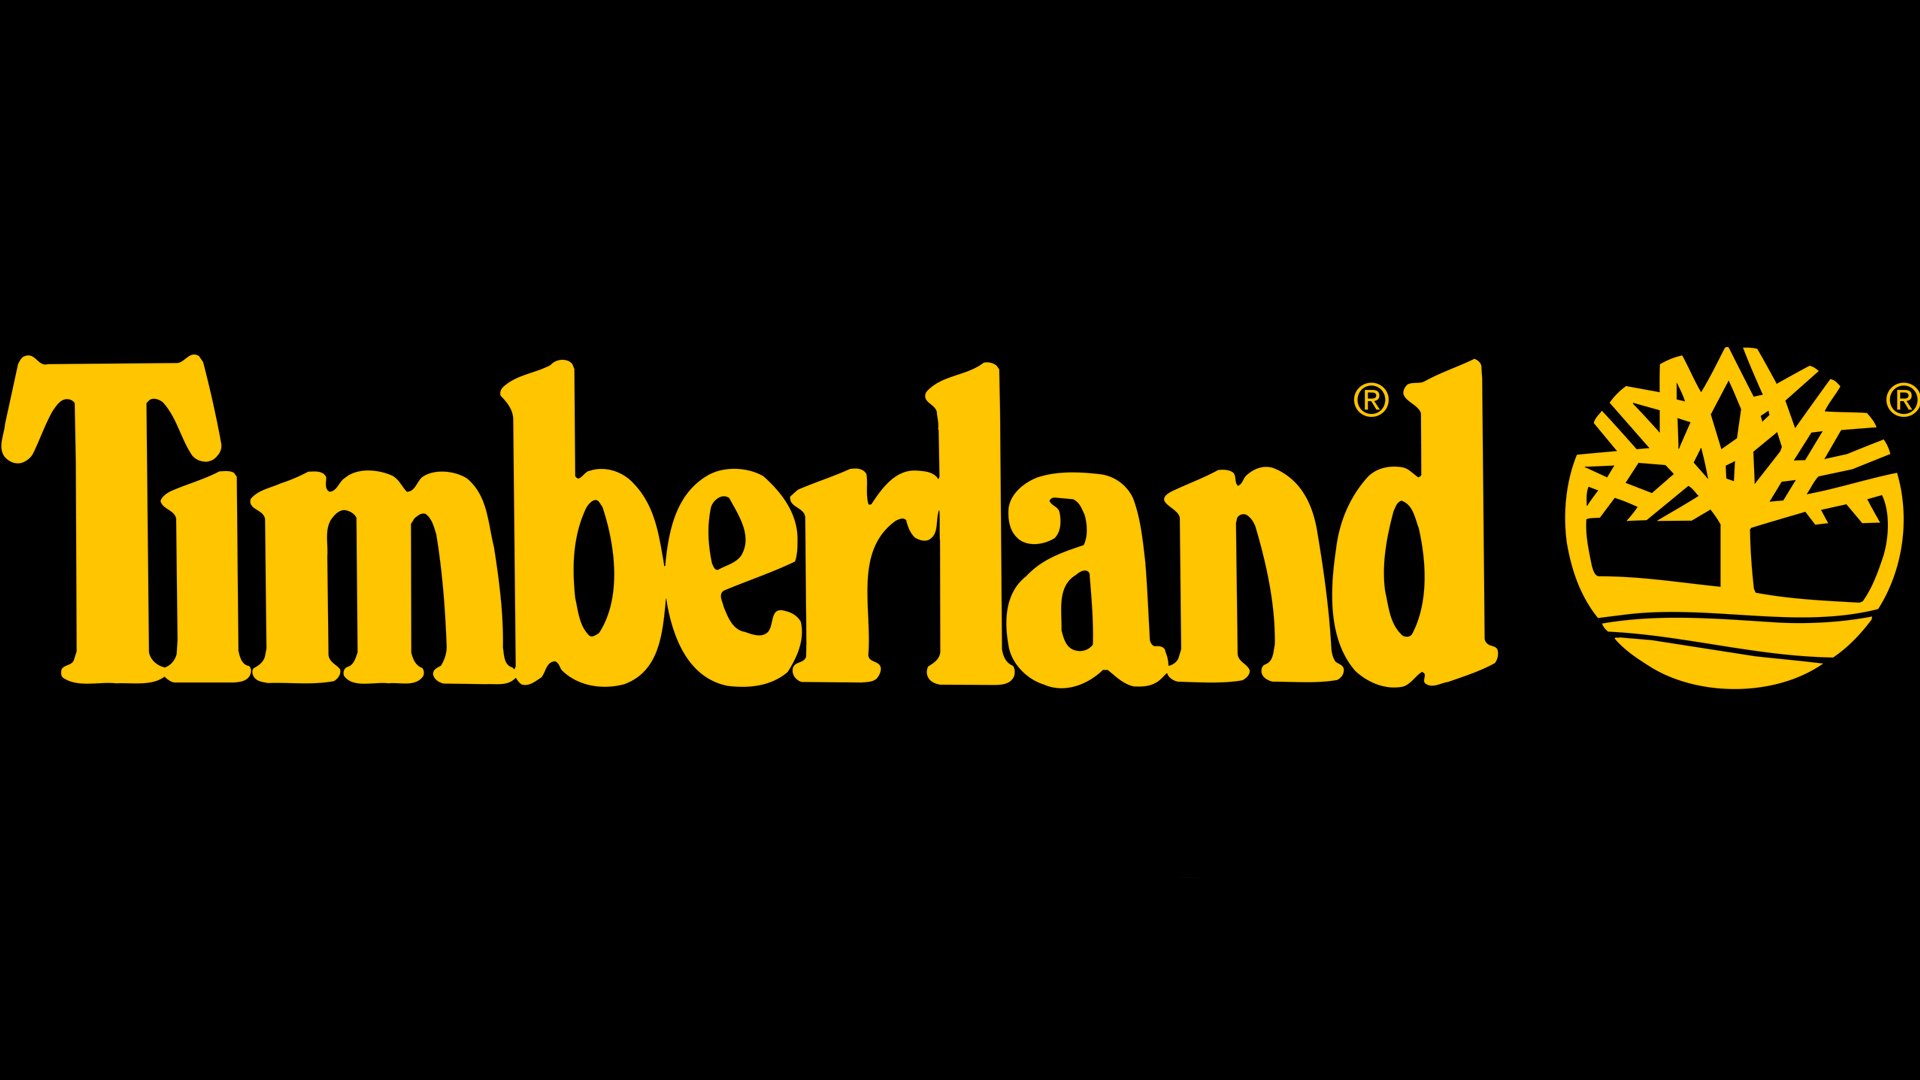 Details 48 que significa el logo de timberland - Abzlocal.mx